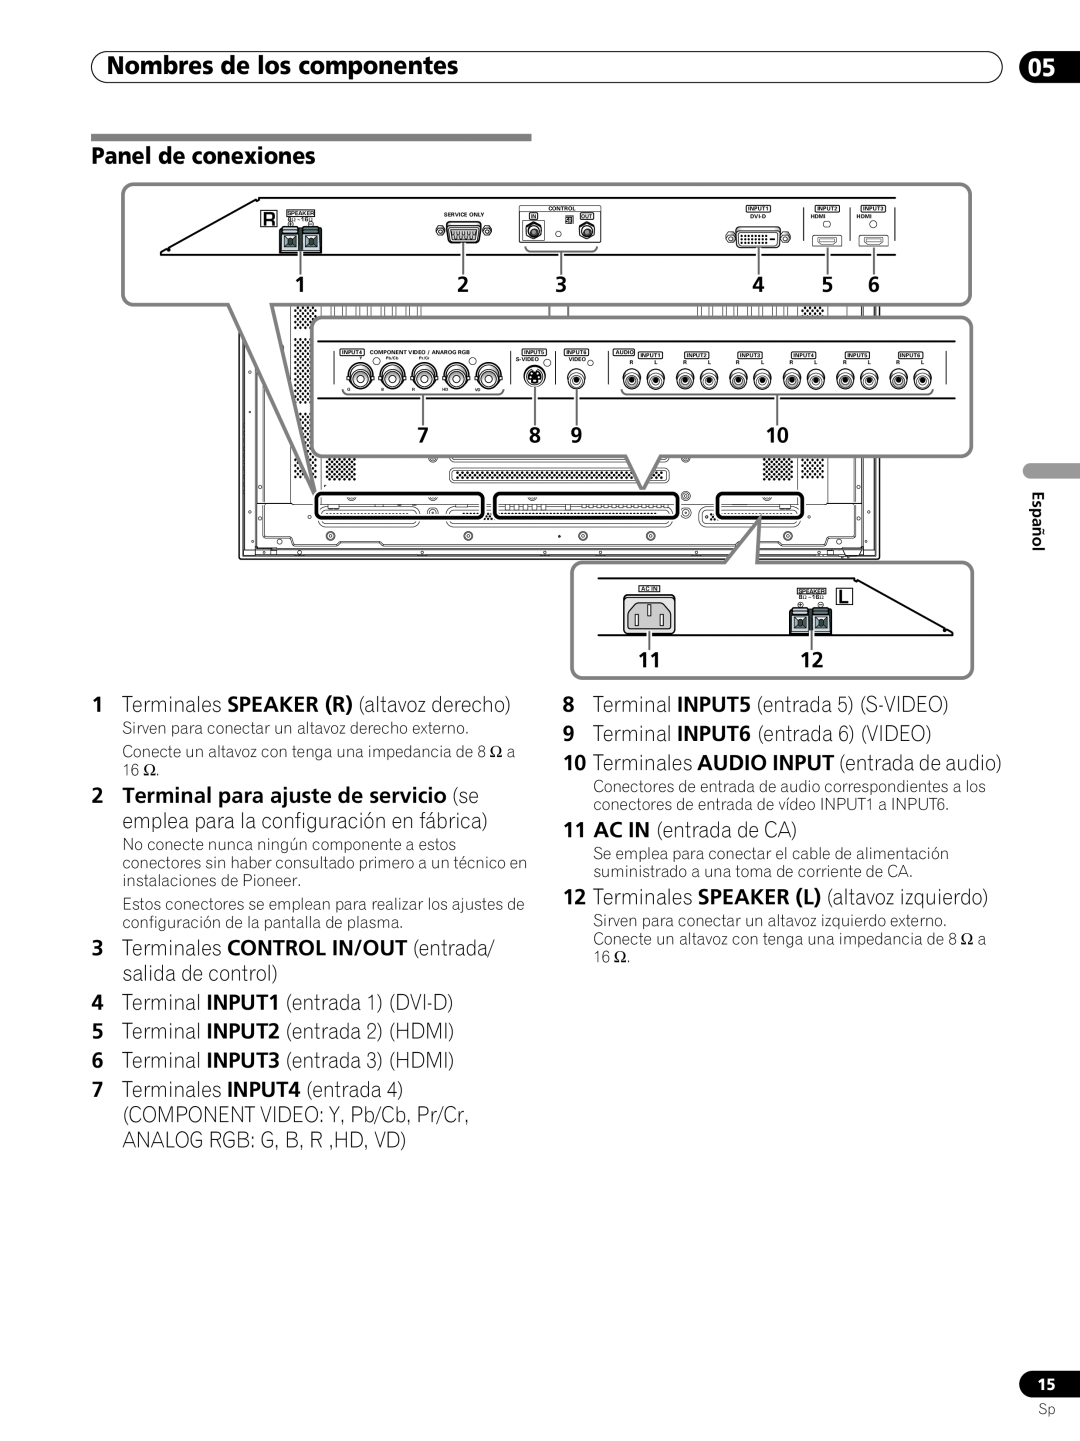 Pioneer PRO-FHD1 Panel de conexiones, 7 8, Nombres de los componentes, Terminales SPEAKER R altavoz derecho, 1112 